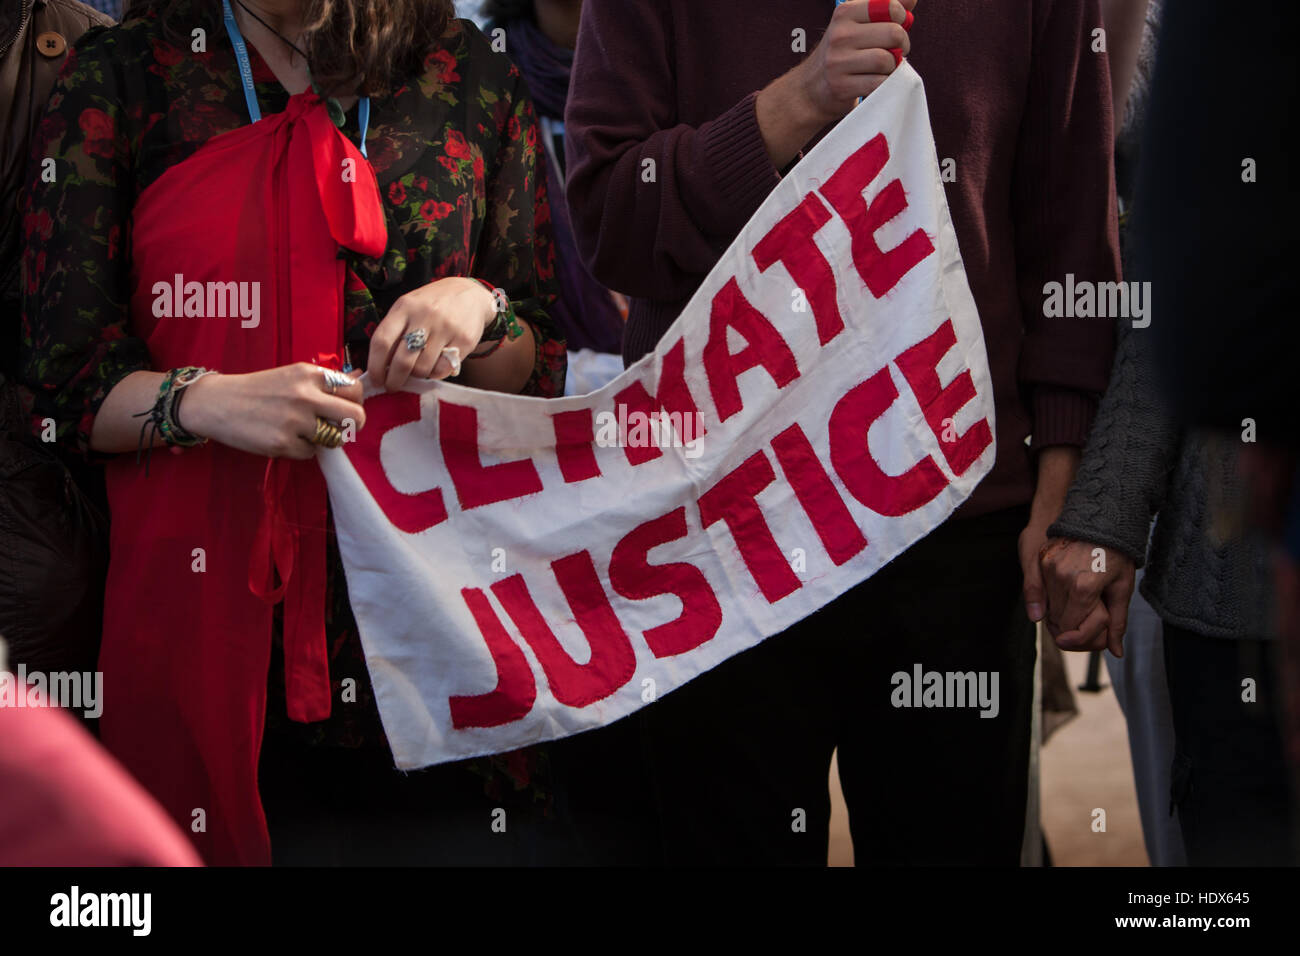 Klimagerechtigkeit enthüllen ihre "Peoples to-do List" im Zuge der Donald Trump wird gewählt, um die Position des Präsidenten der USA, während der COP22 UN-Klimakonferenz in Marrakesch, Marokko, am 9. November 2016 statt. Stockfoto